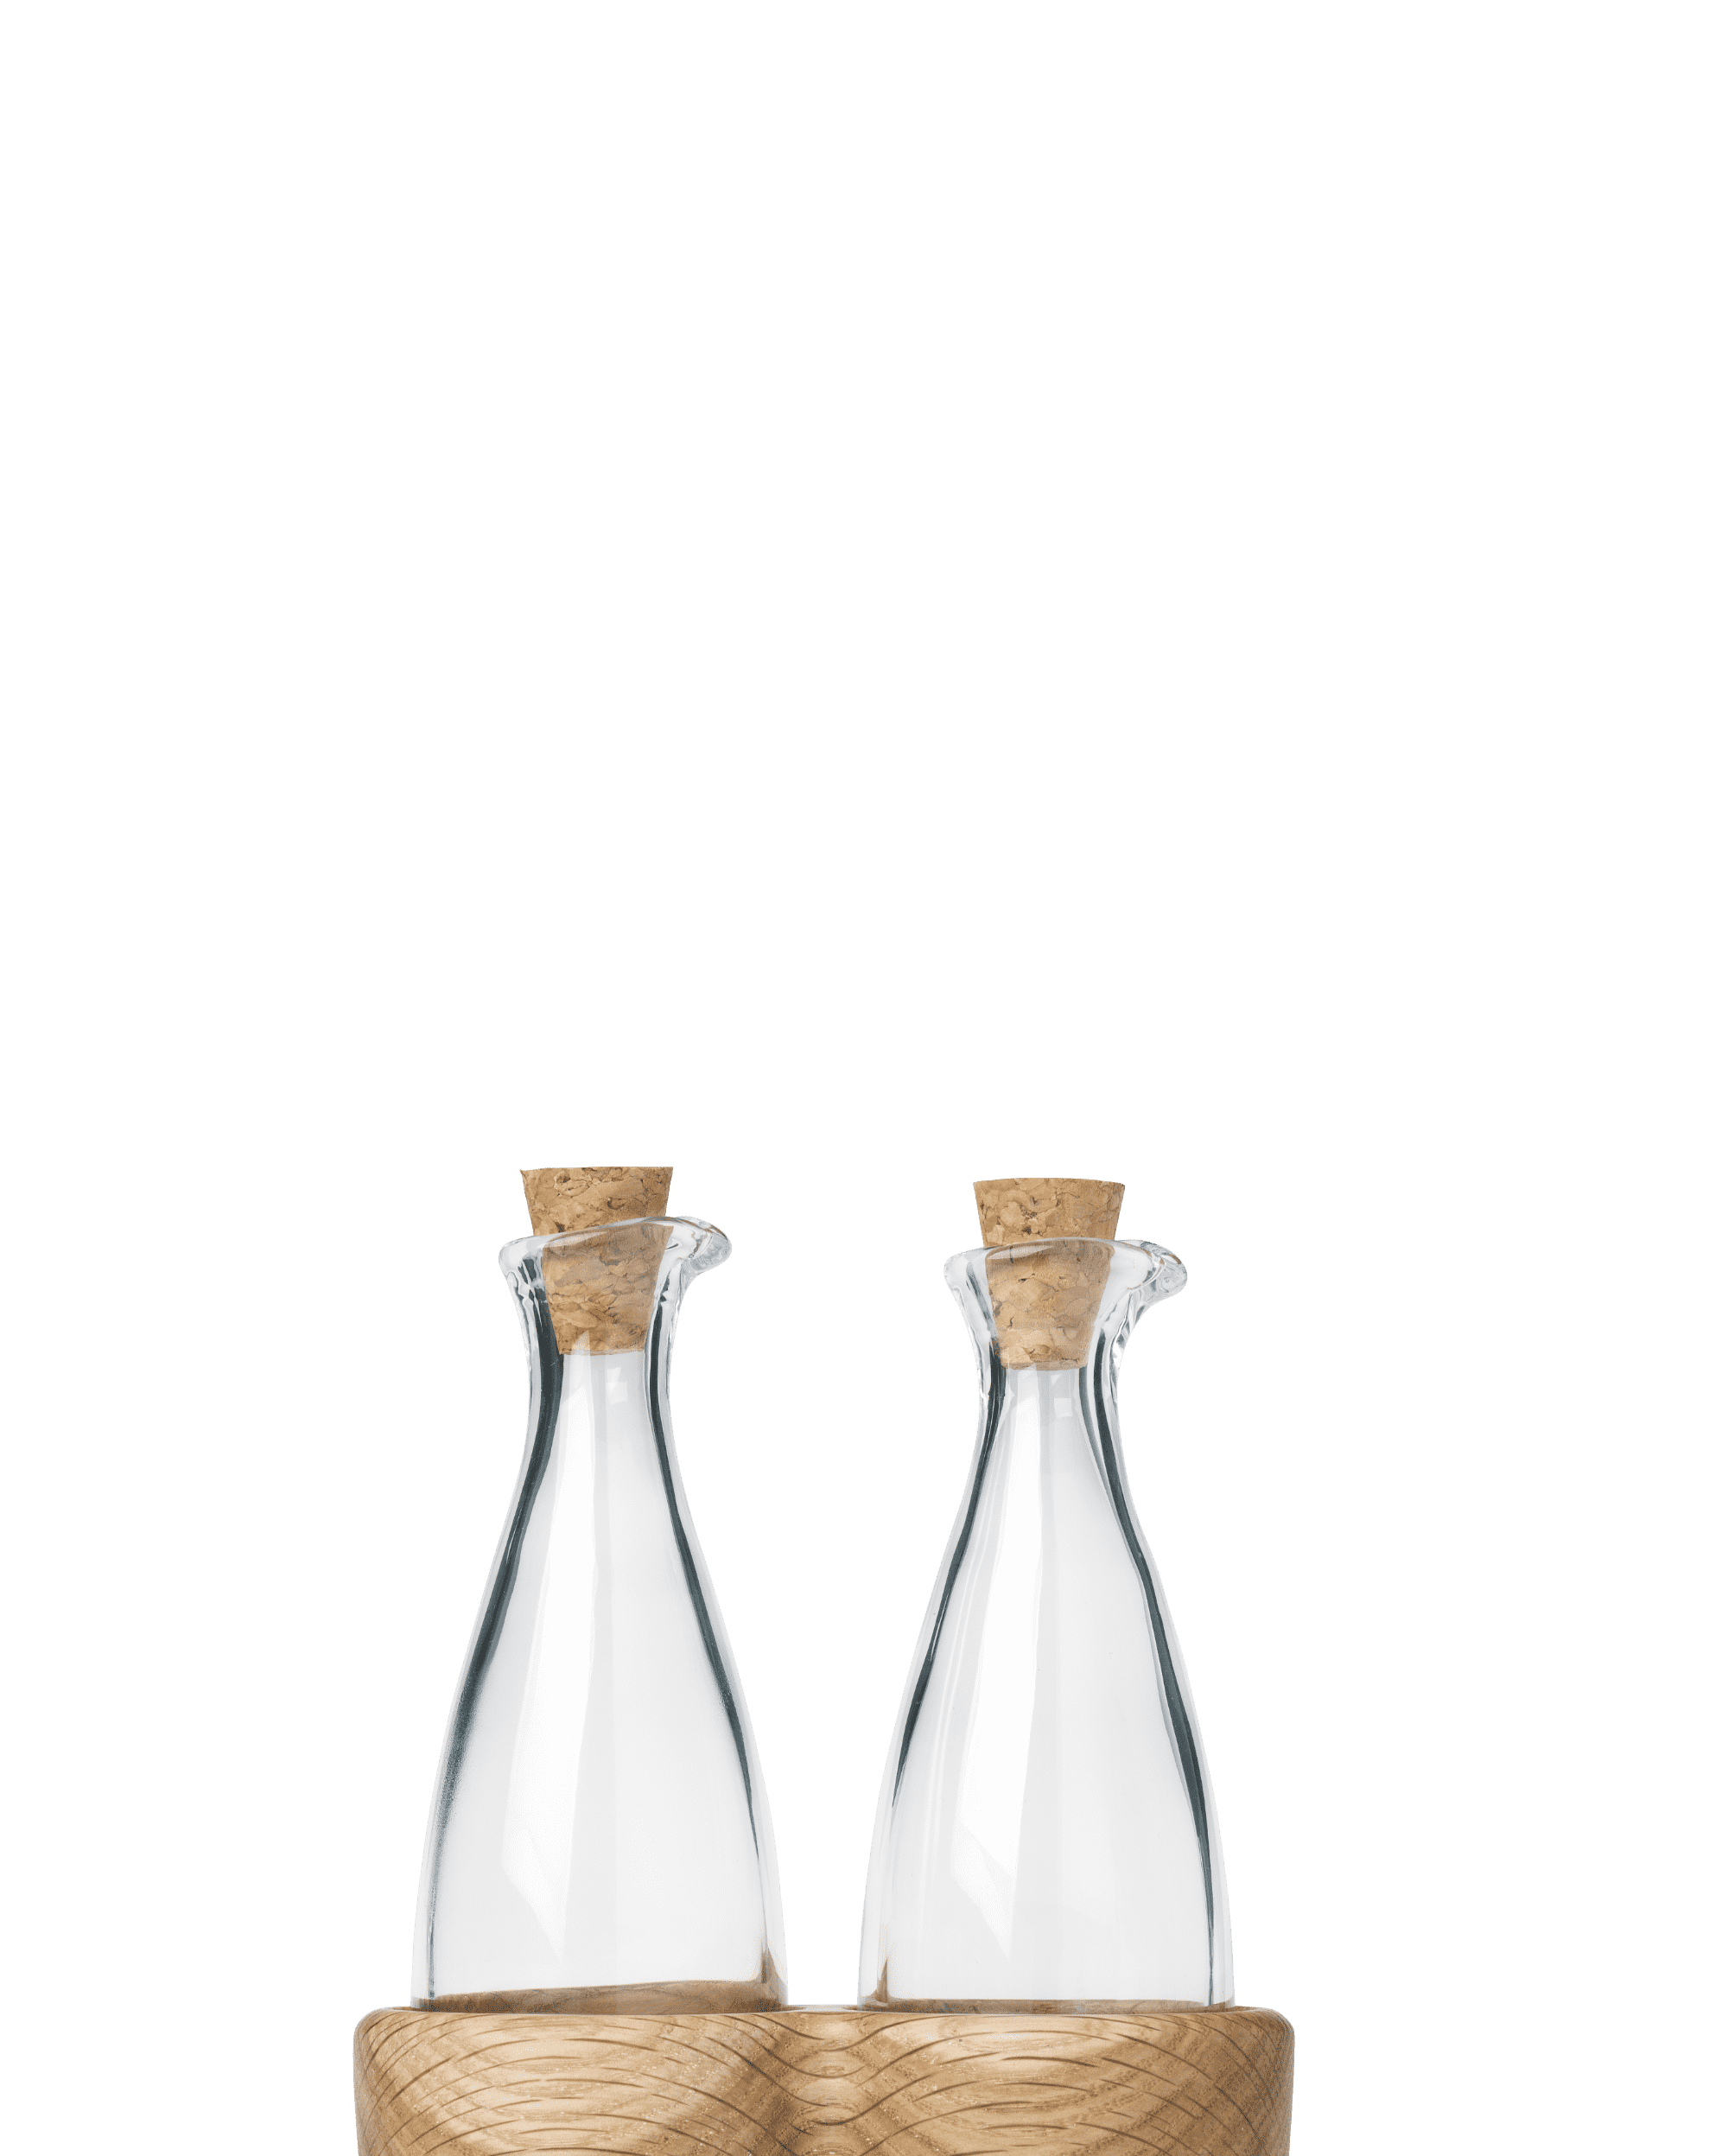 Öl- und Essigflasche H15